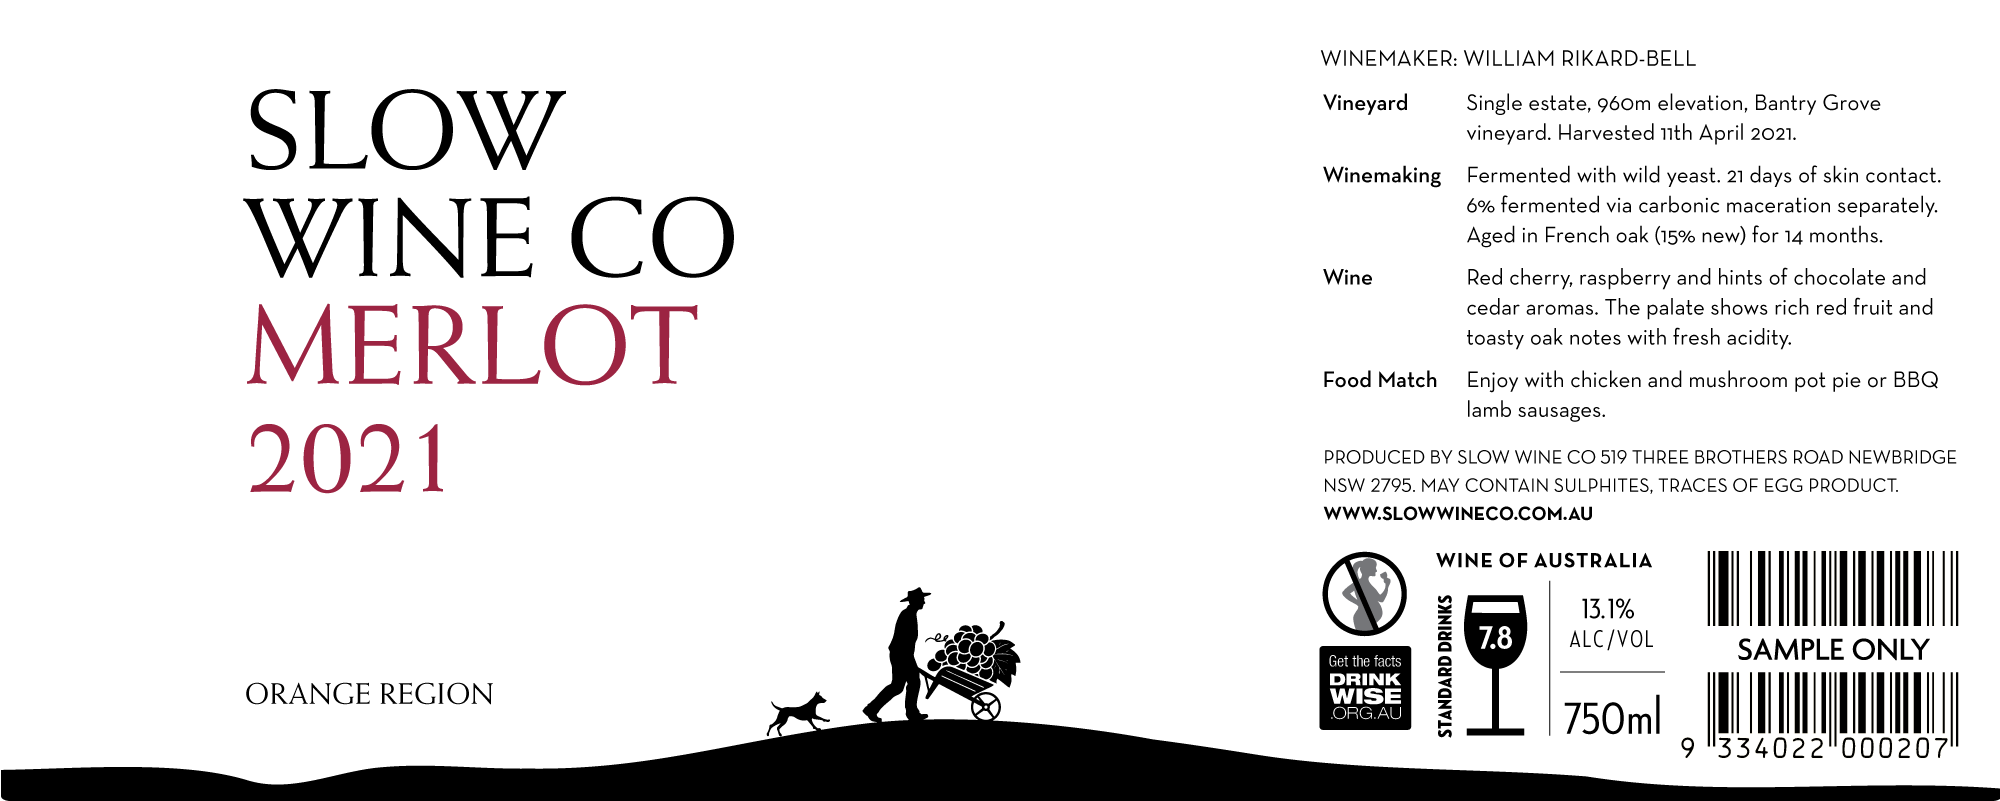 Slow Wine Co Merlot 2021 Label